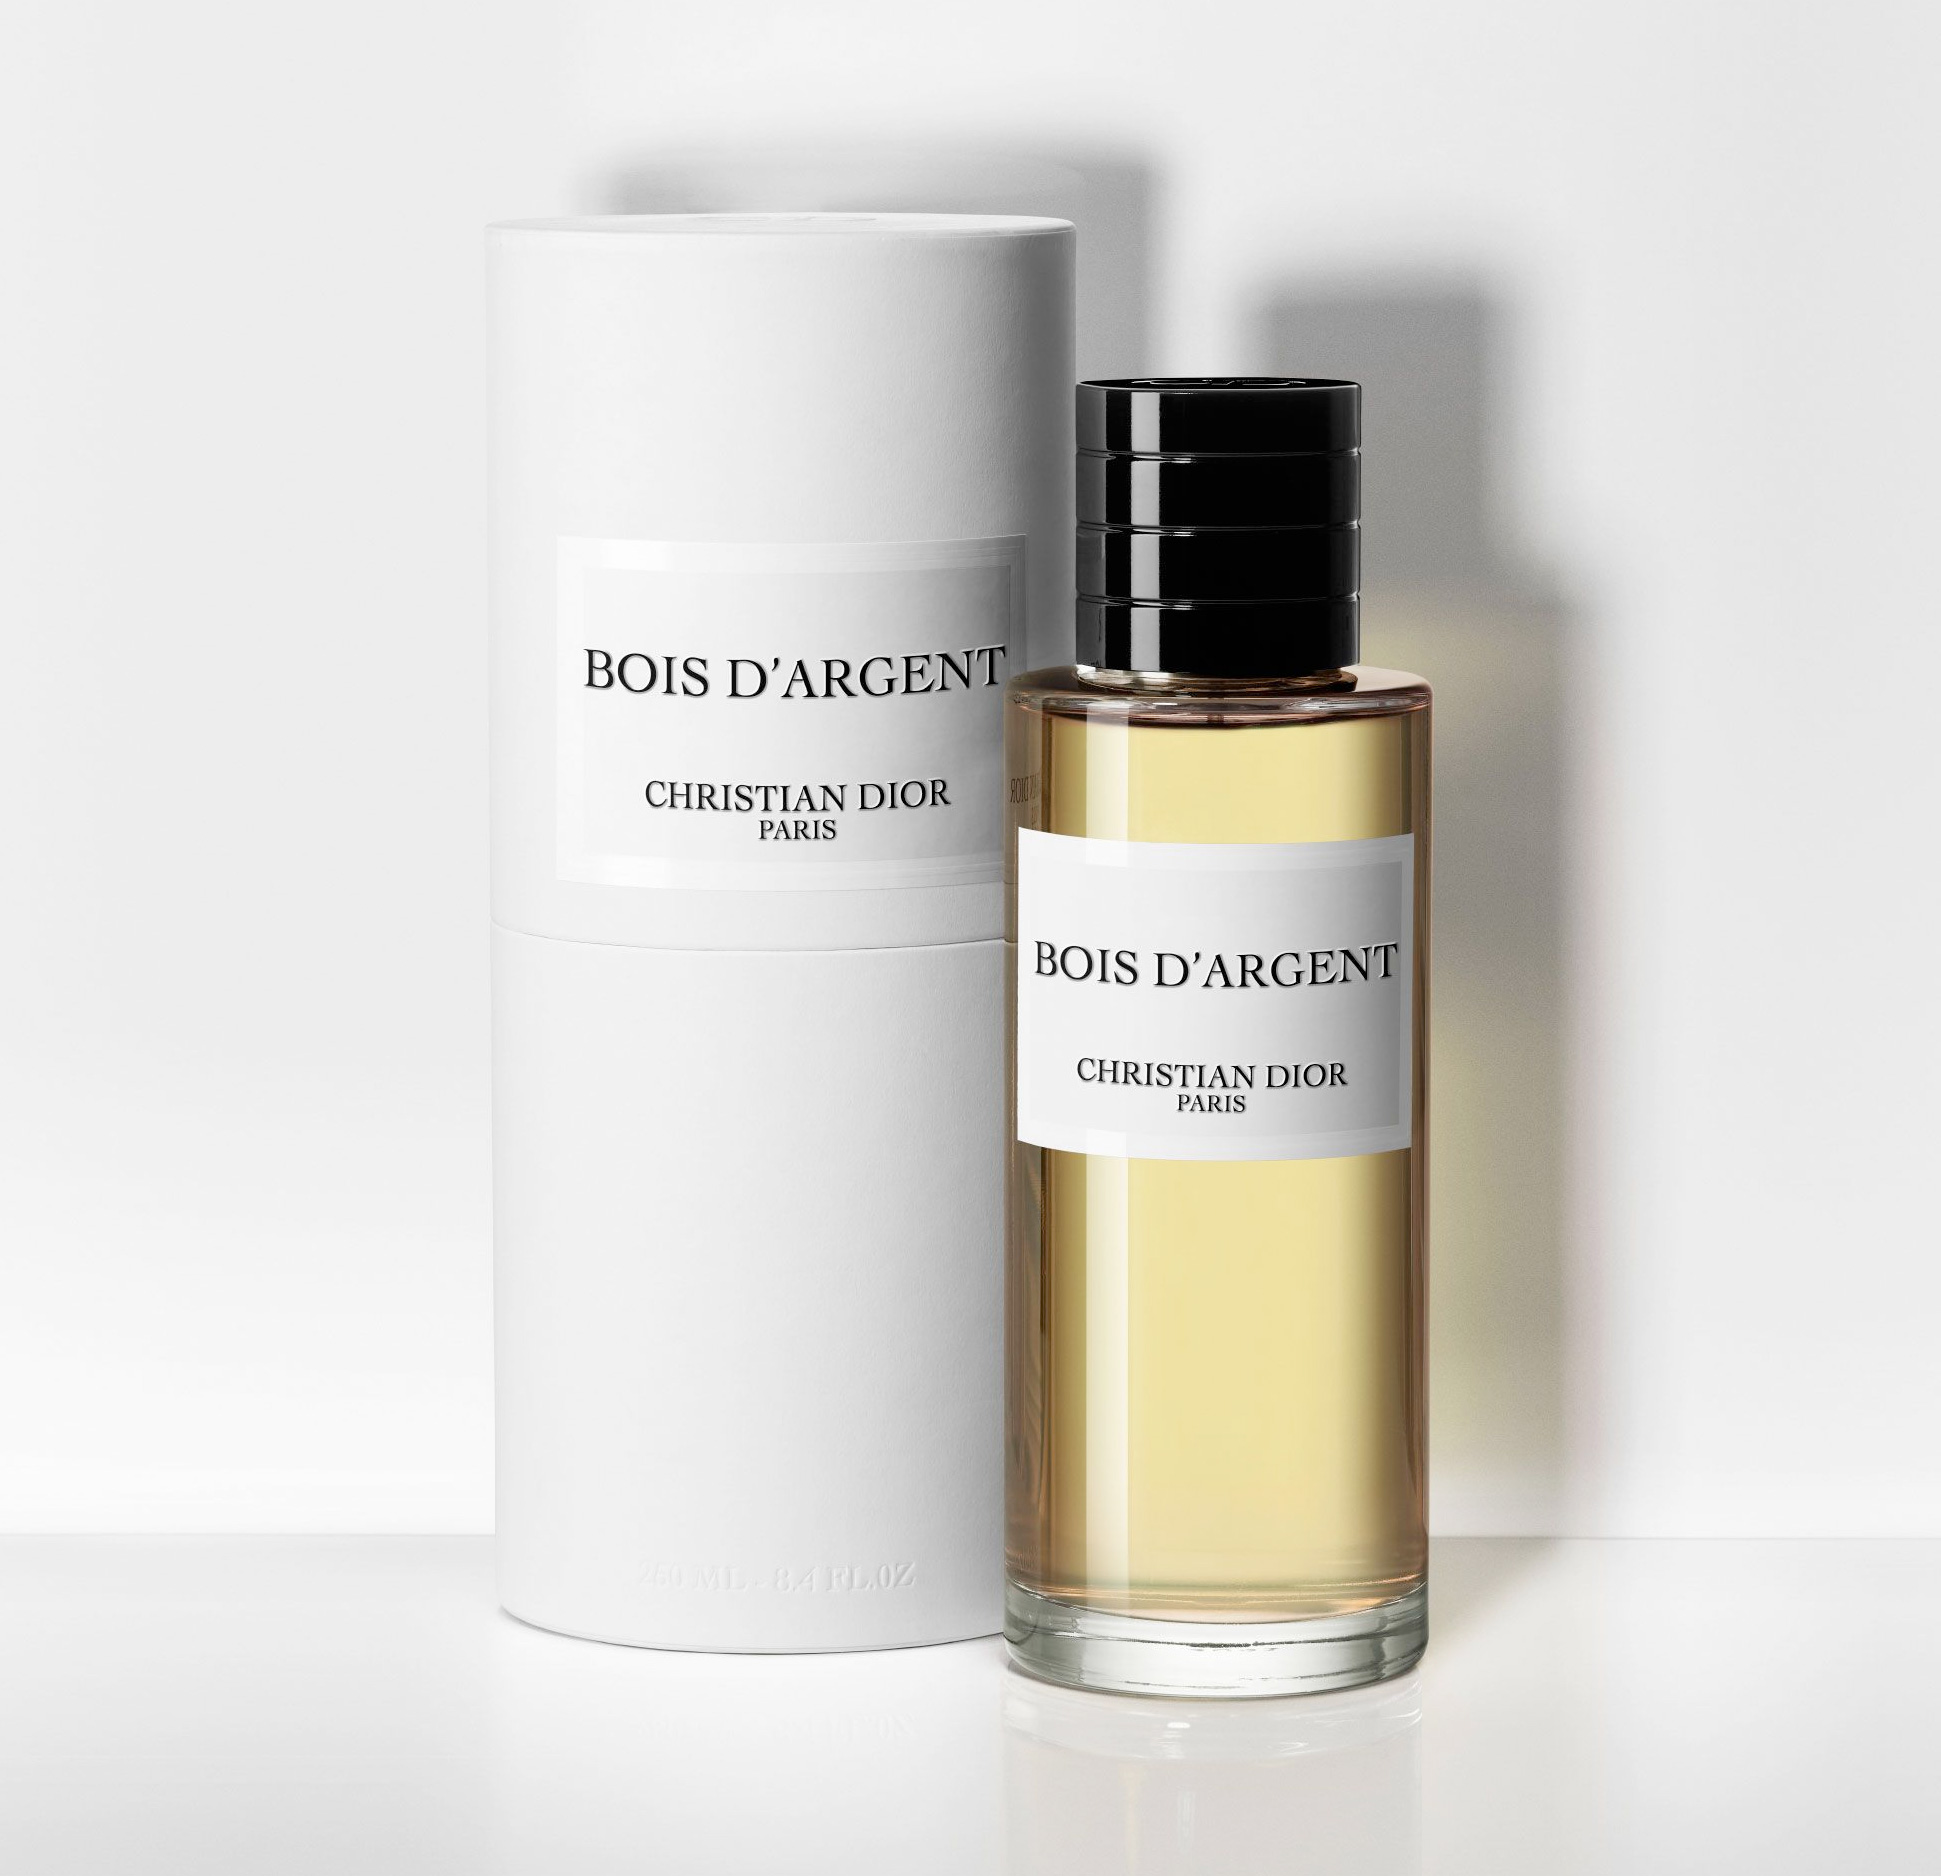 Bois d'Argent Christian Dior Review 